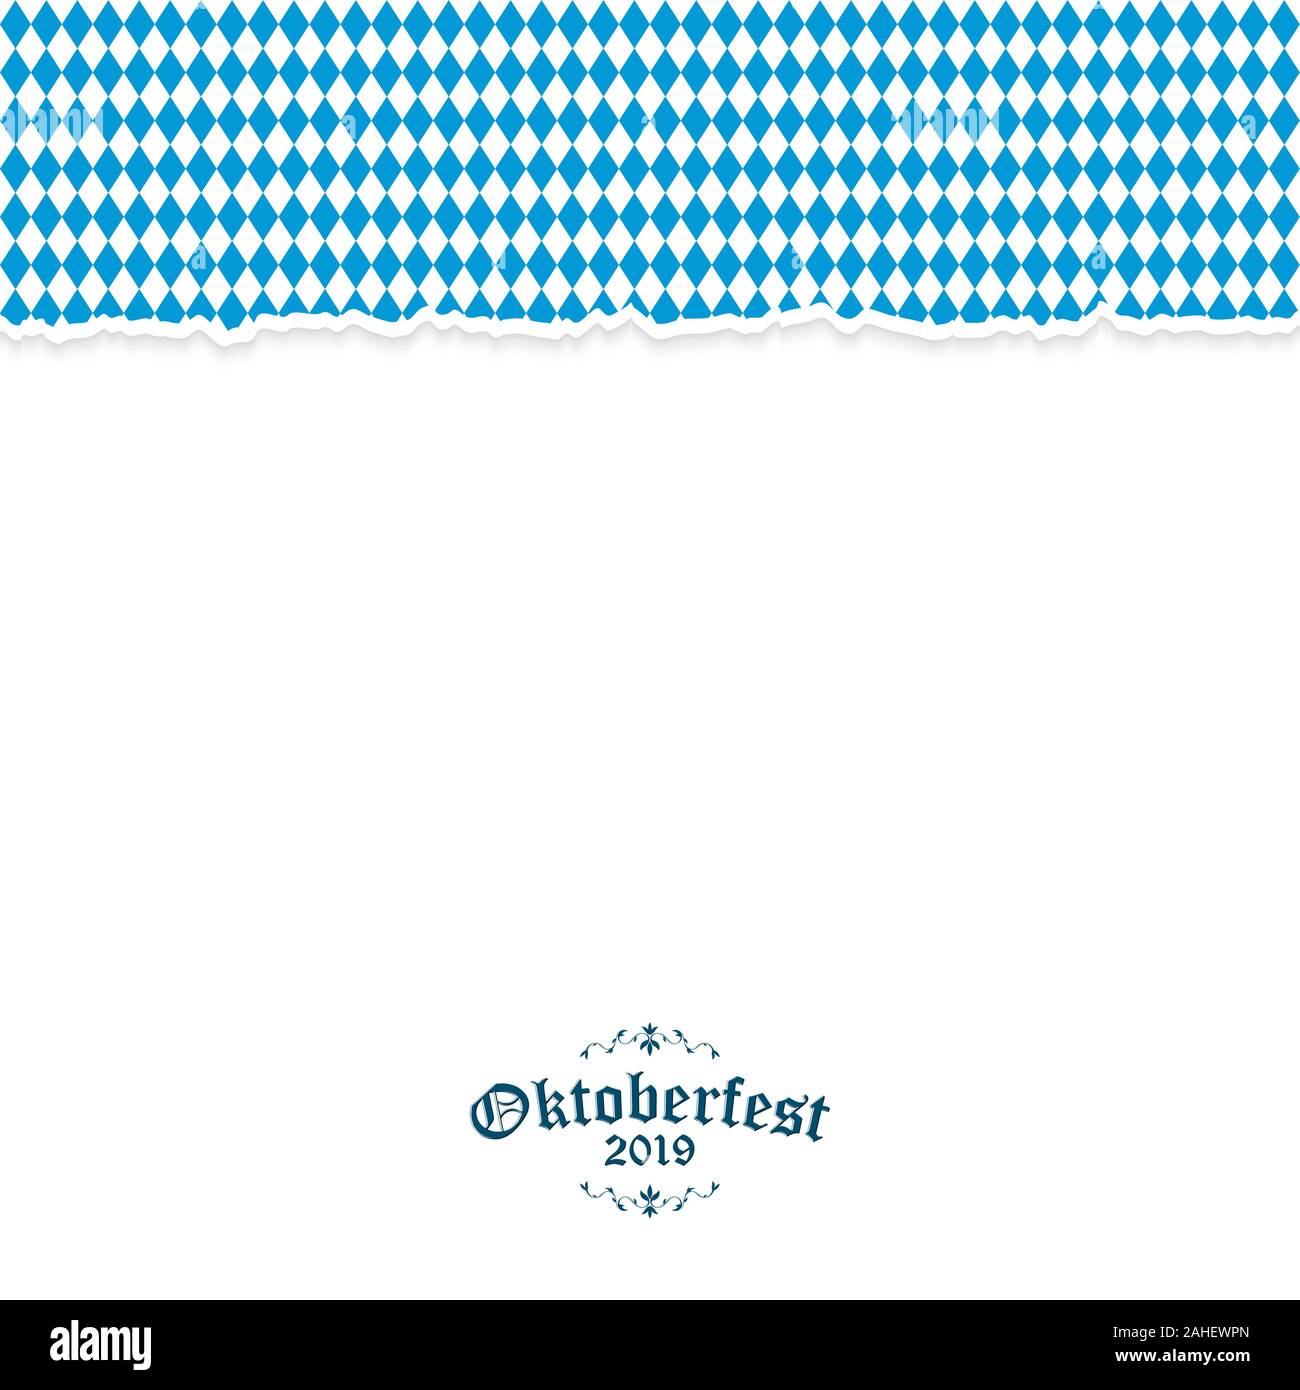 Arrière-plan de l'Oktoberfest avec éventrer avoir papier damier bleu-blanc et de l'Oktoberfest 2019 texte Illustration de Vecteur